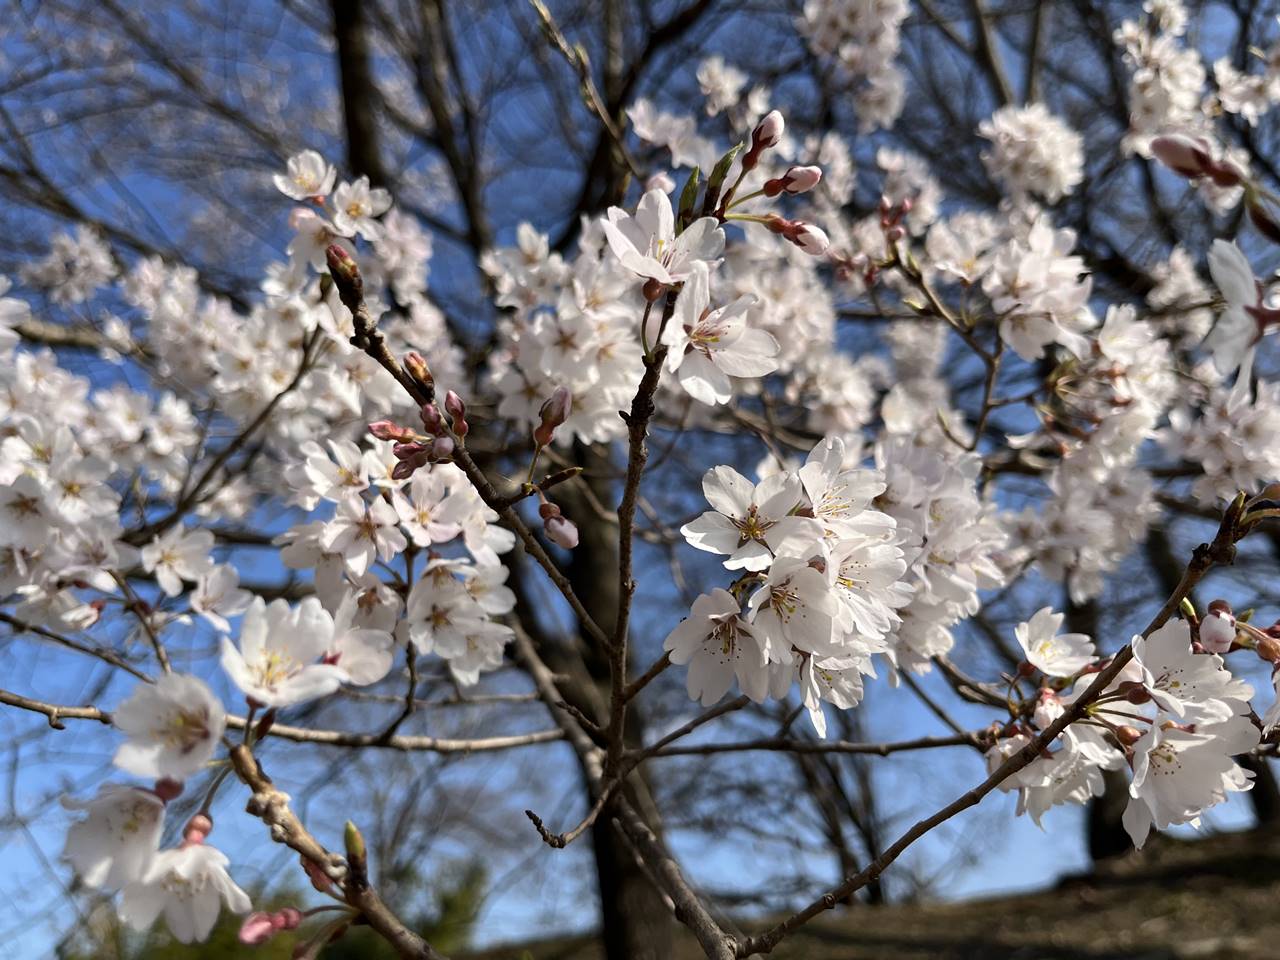 【寄居】鉢形城公園 満開の桜